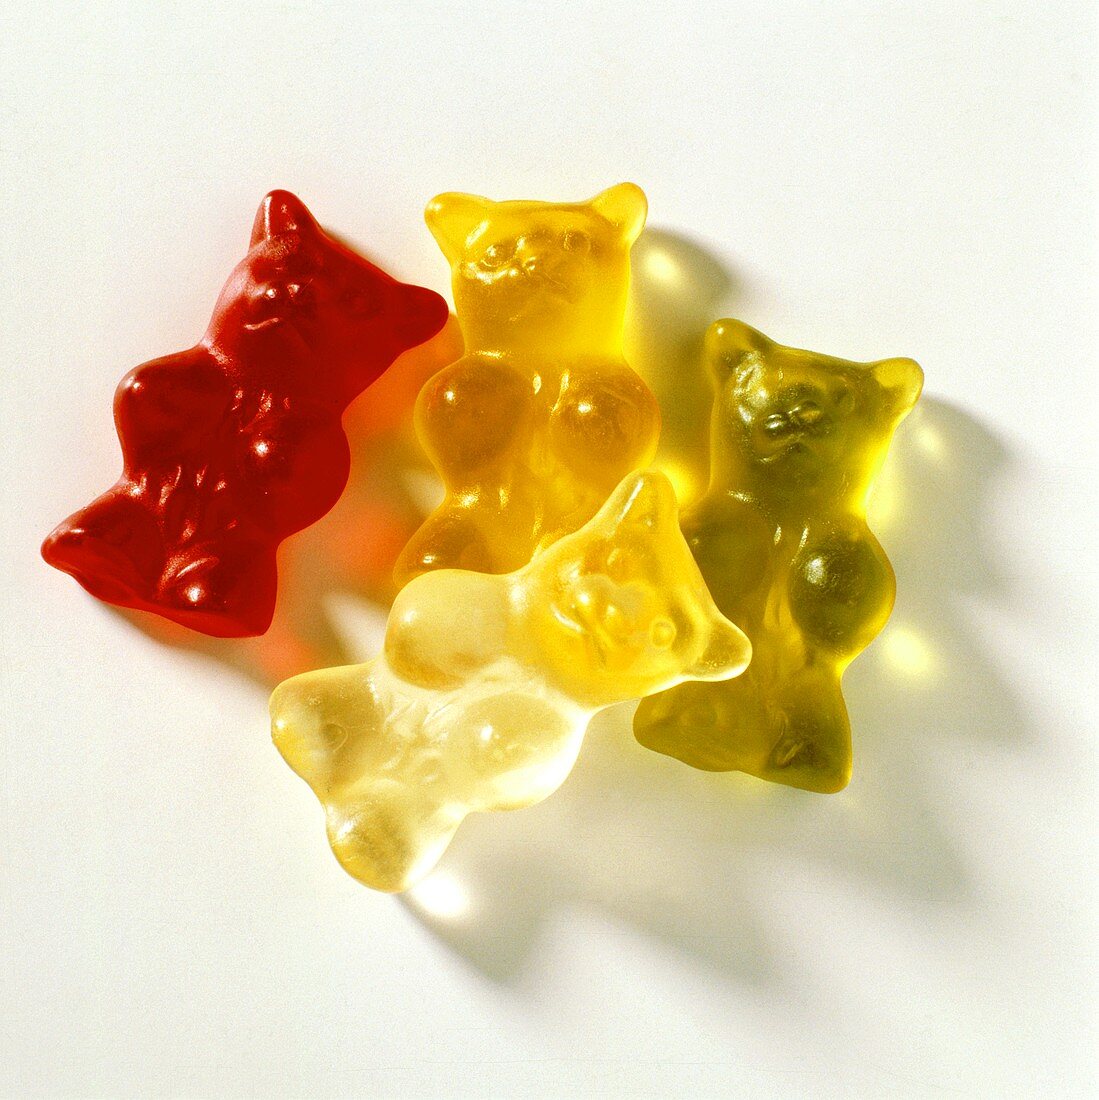 Four gummi bears (jelly bears) in various colours